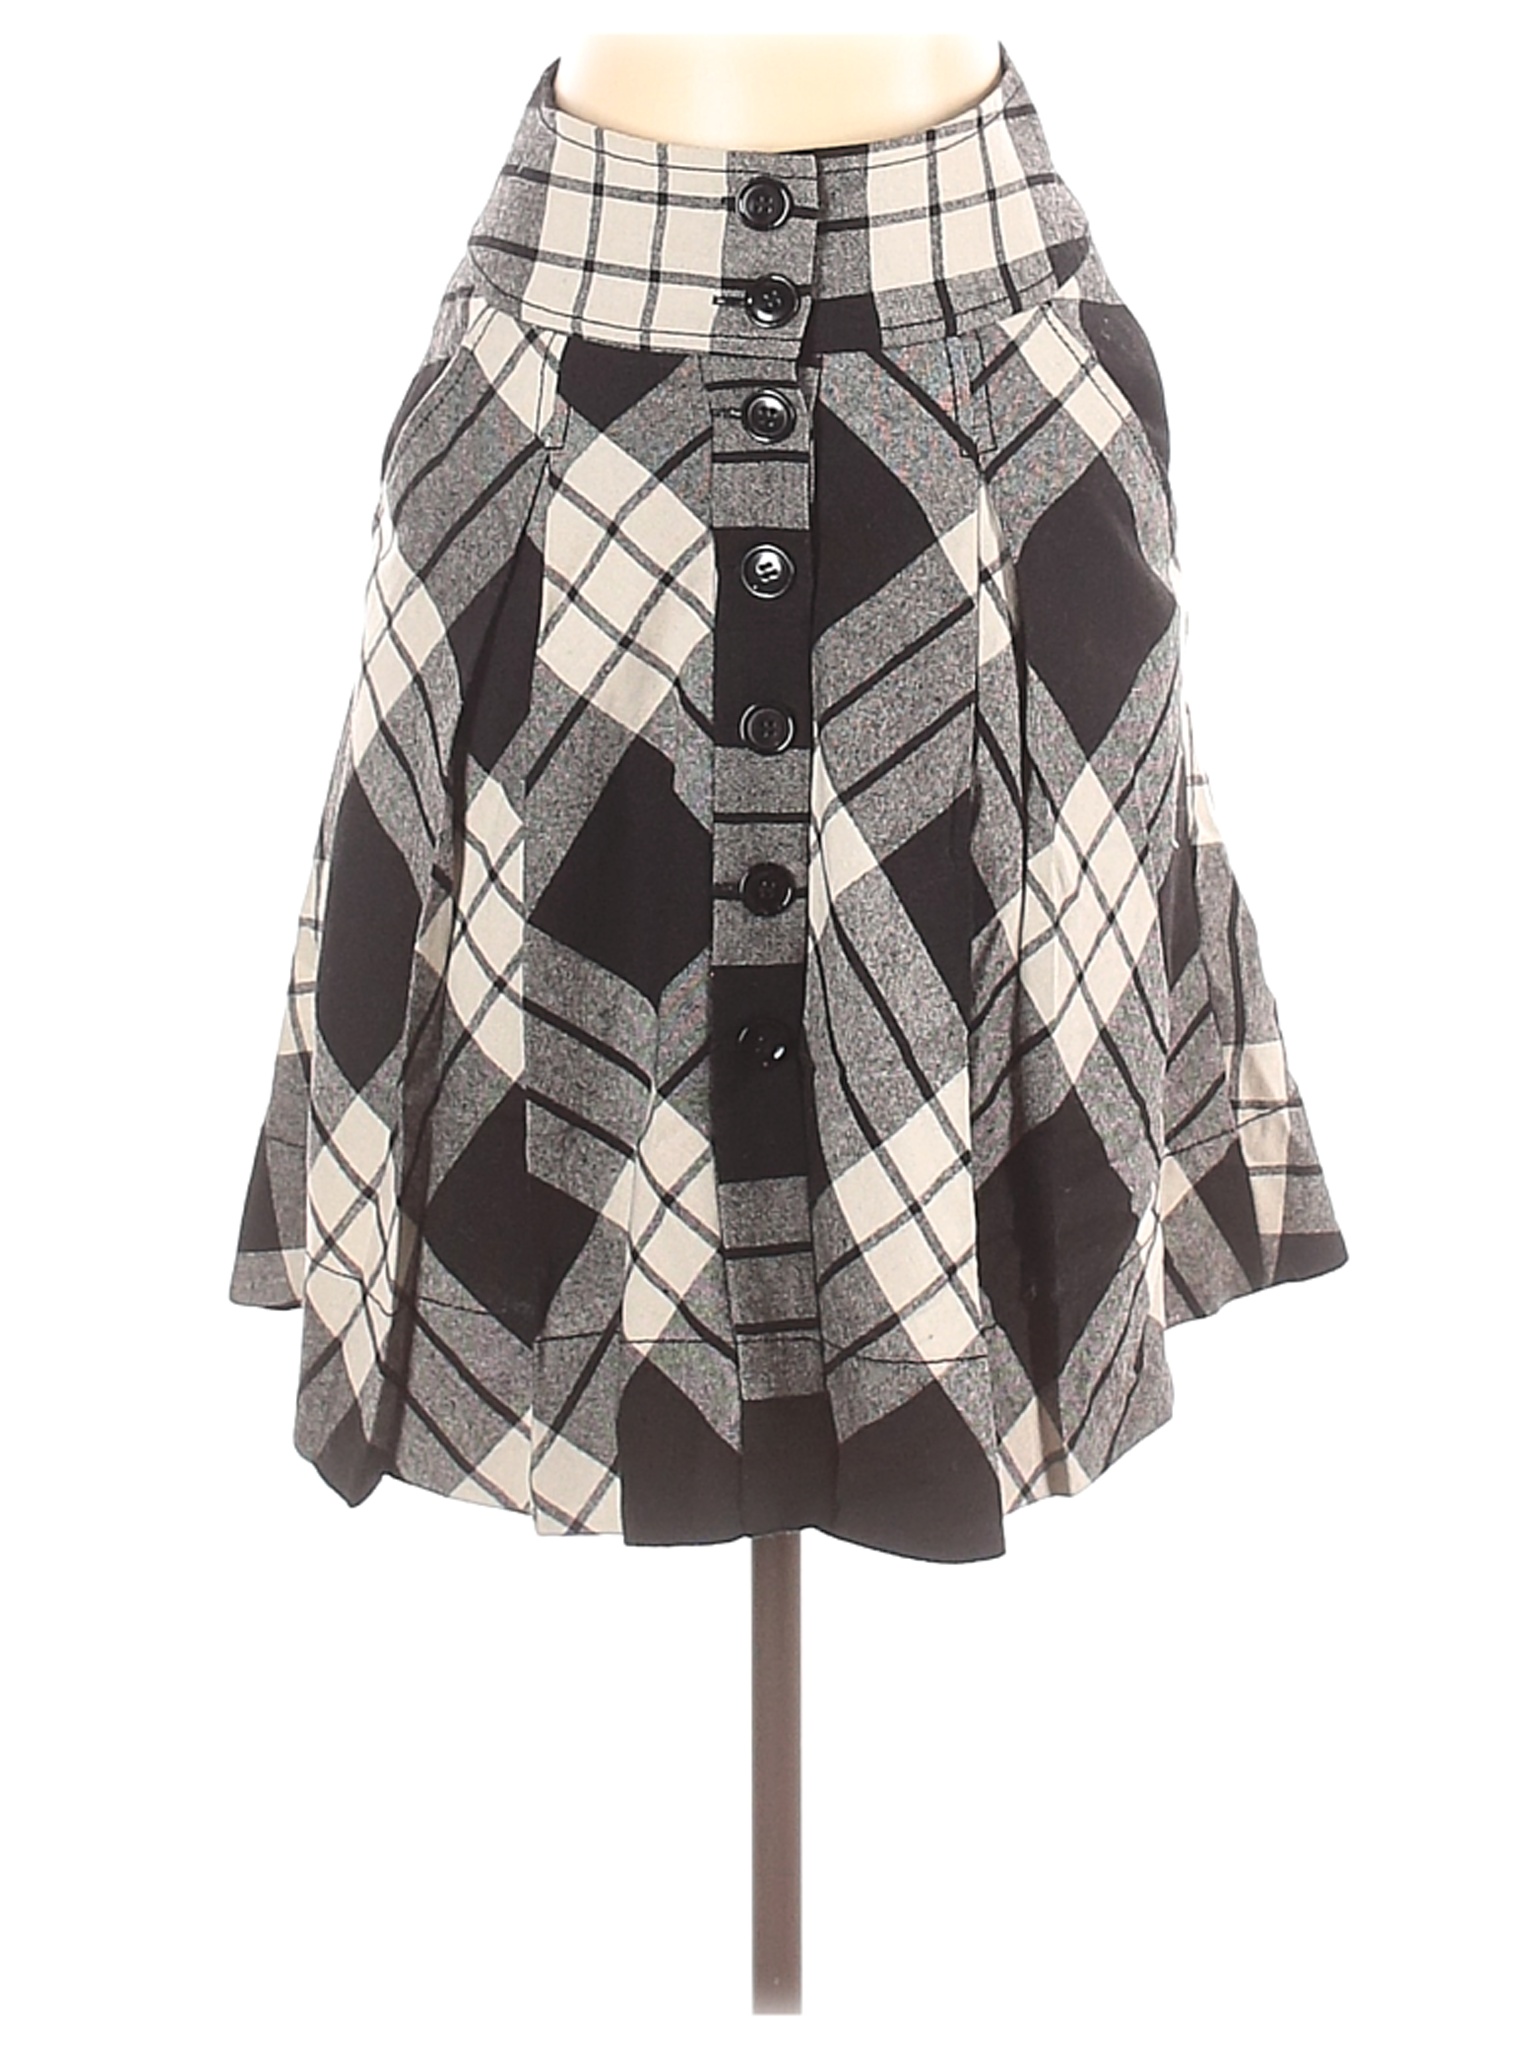 H&M Women Black Wool Skirt 2 | eBay